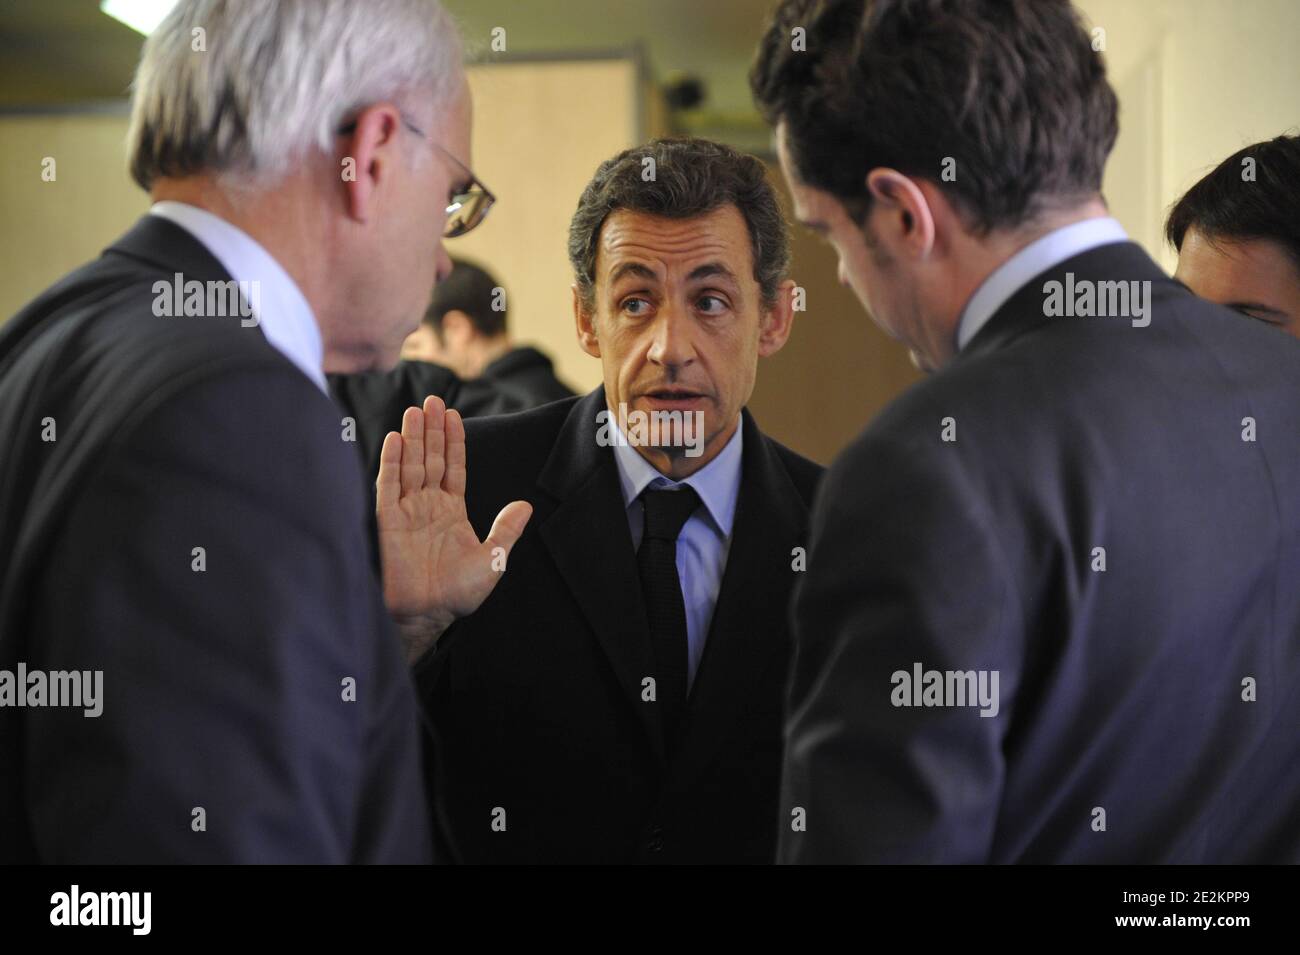 Le président français Nicolas Sarkozy livre ses vœux du nouvel an au monde de l'économie française à Cholet, en France, le 6 janvier 2010. Photo par Elodie Gregoire/ABACAPRESS.COM Banque D'Images